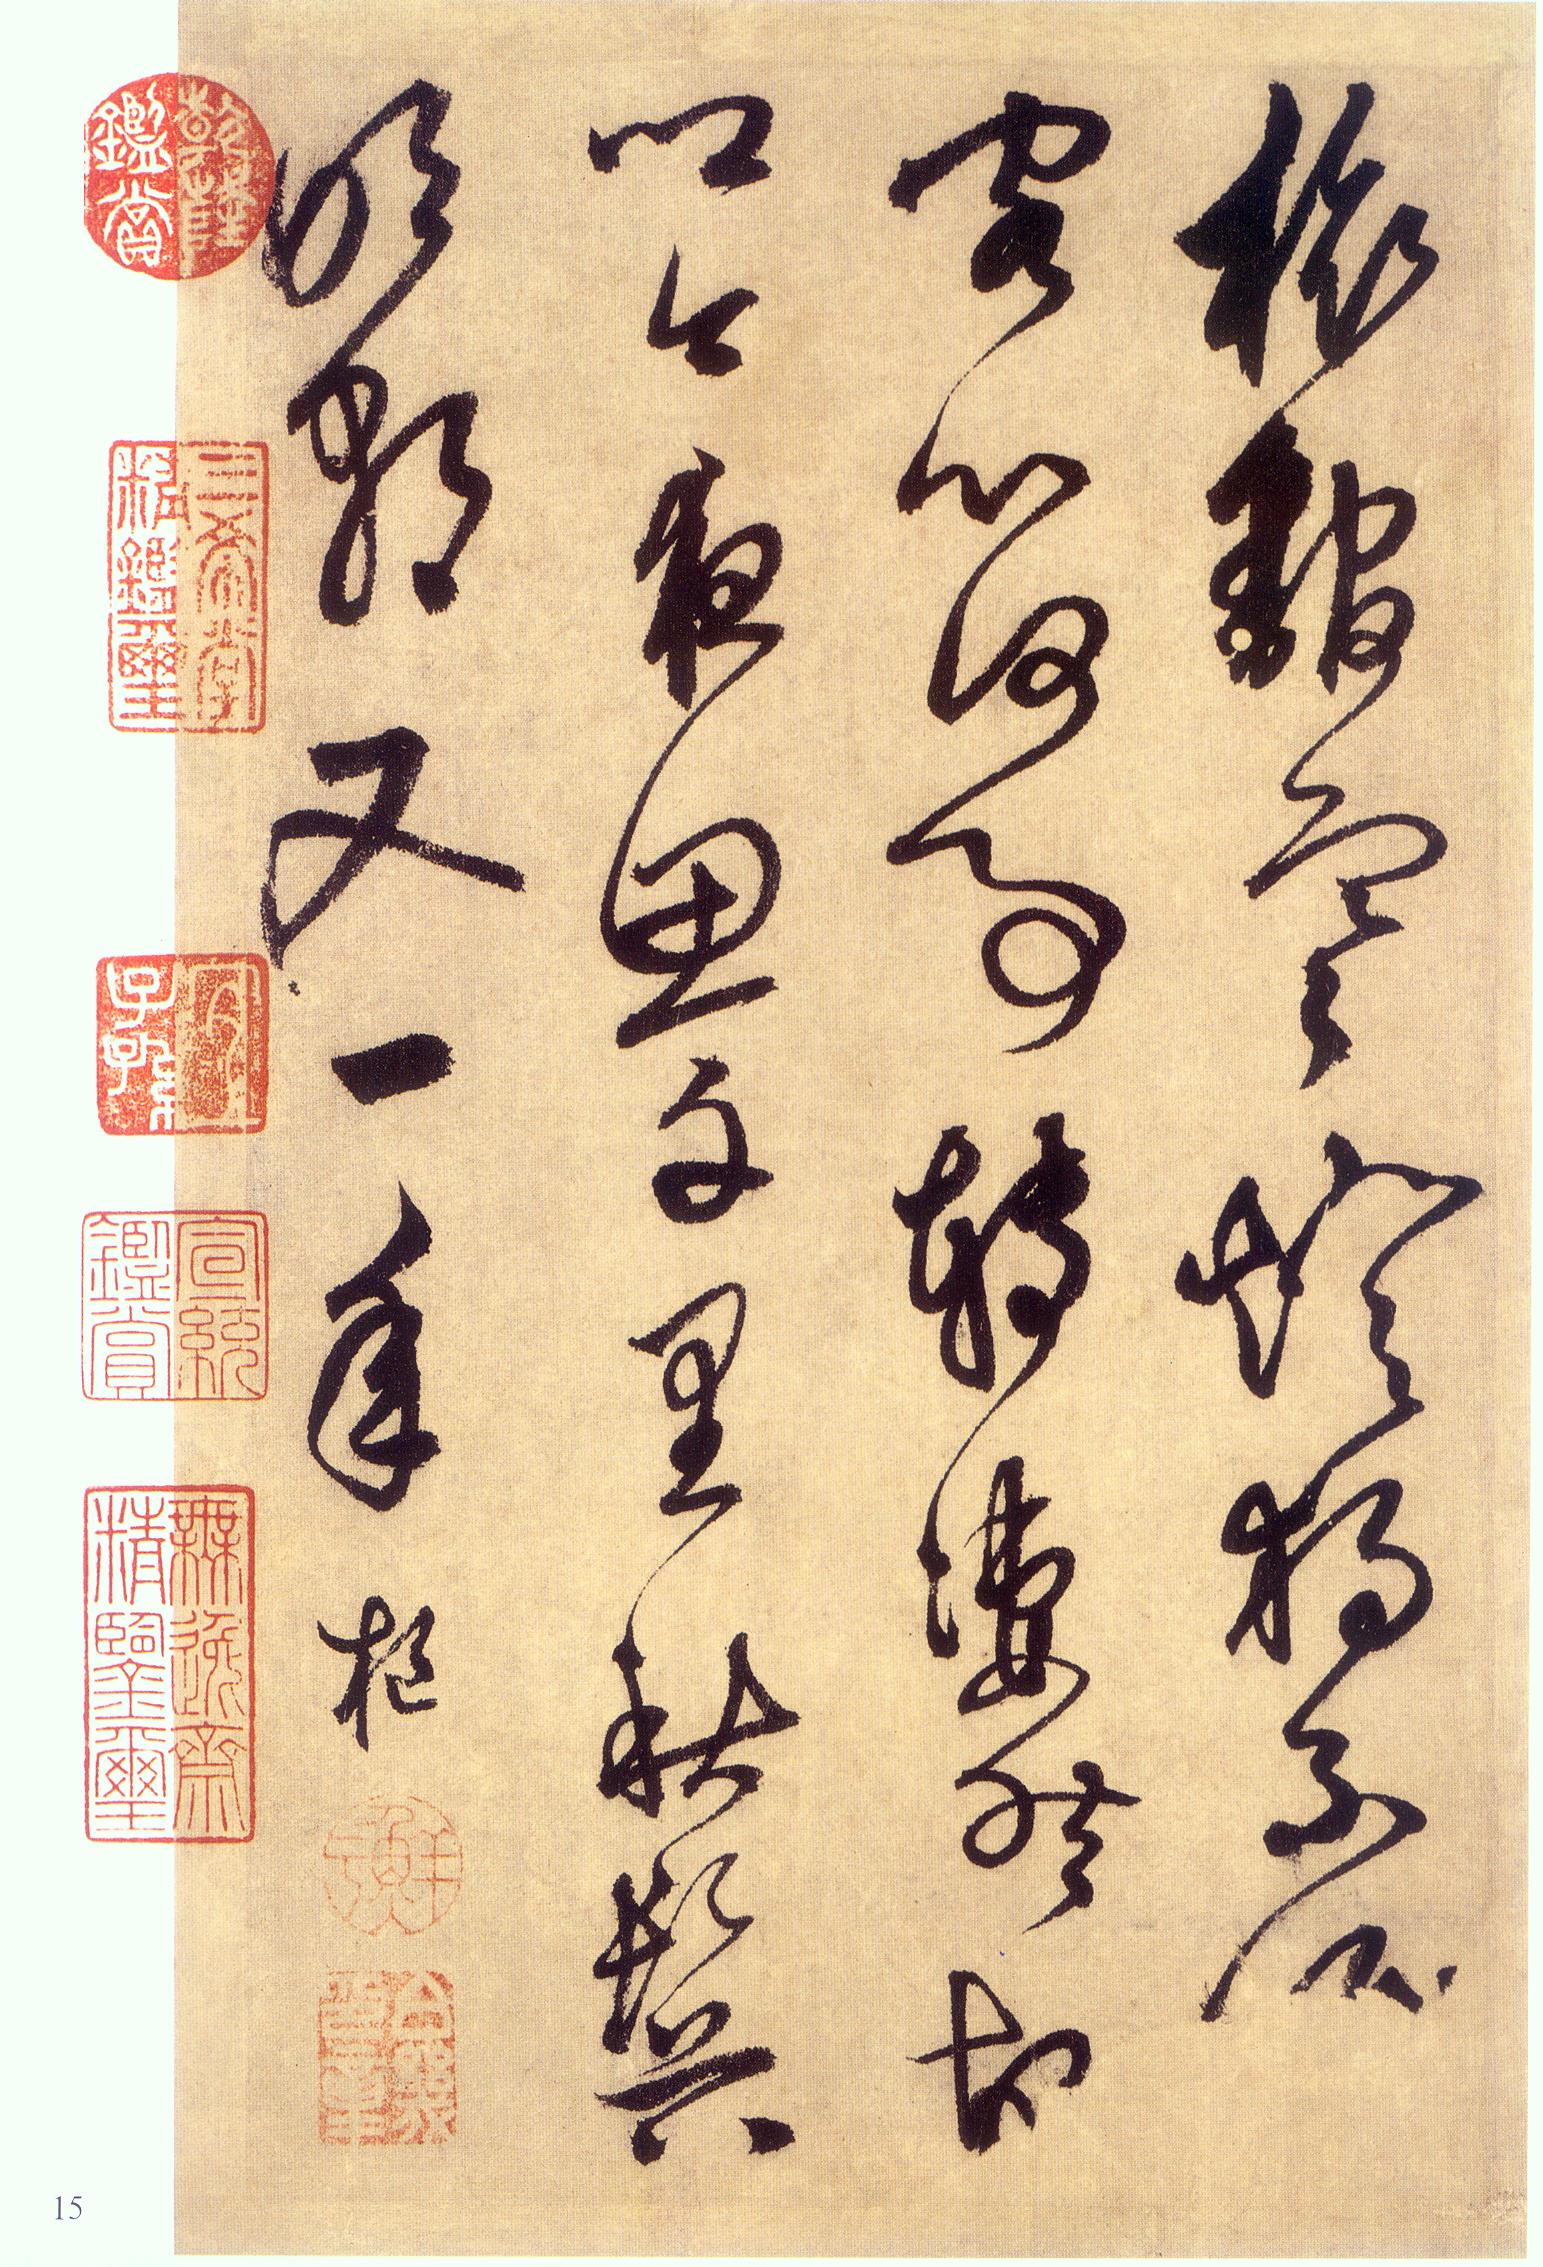 鲜于枢行书《醉时歌等唐人诗十二首》-台北故宫博物院藏(图15)